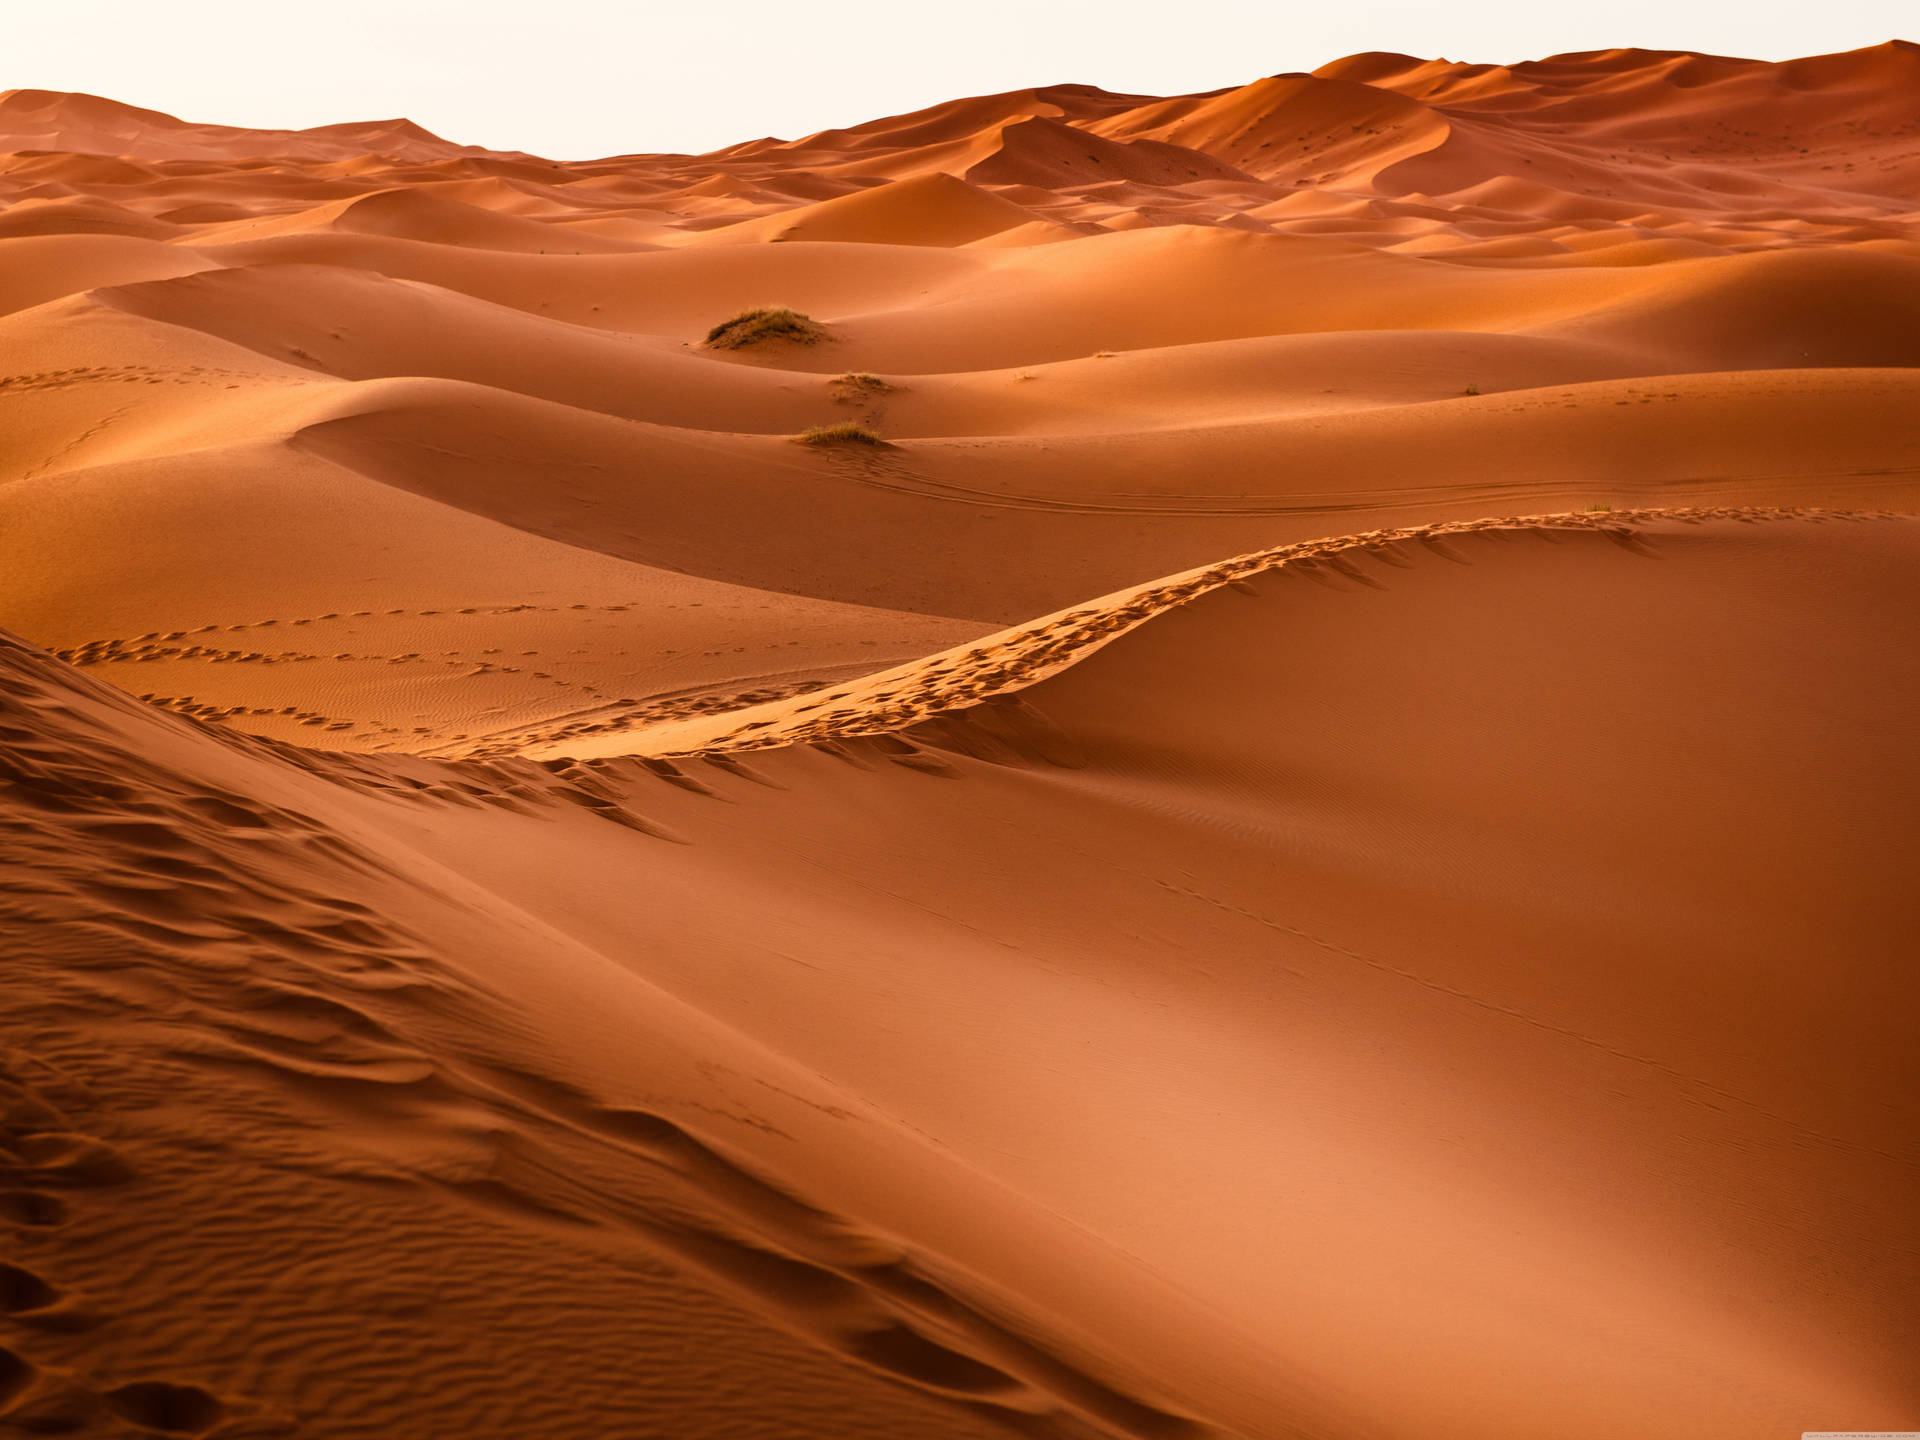 Top 999+ Desert Wallpaper Full HD, 4K✓Free to Use